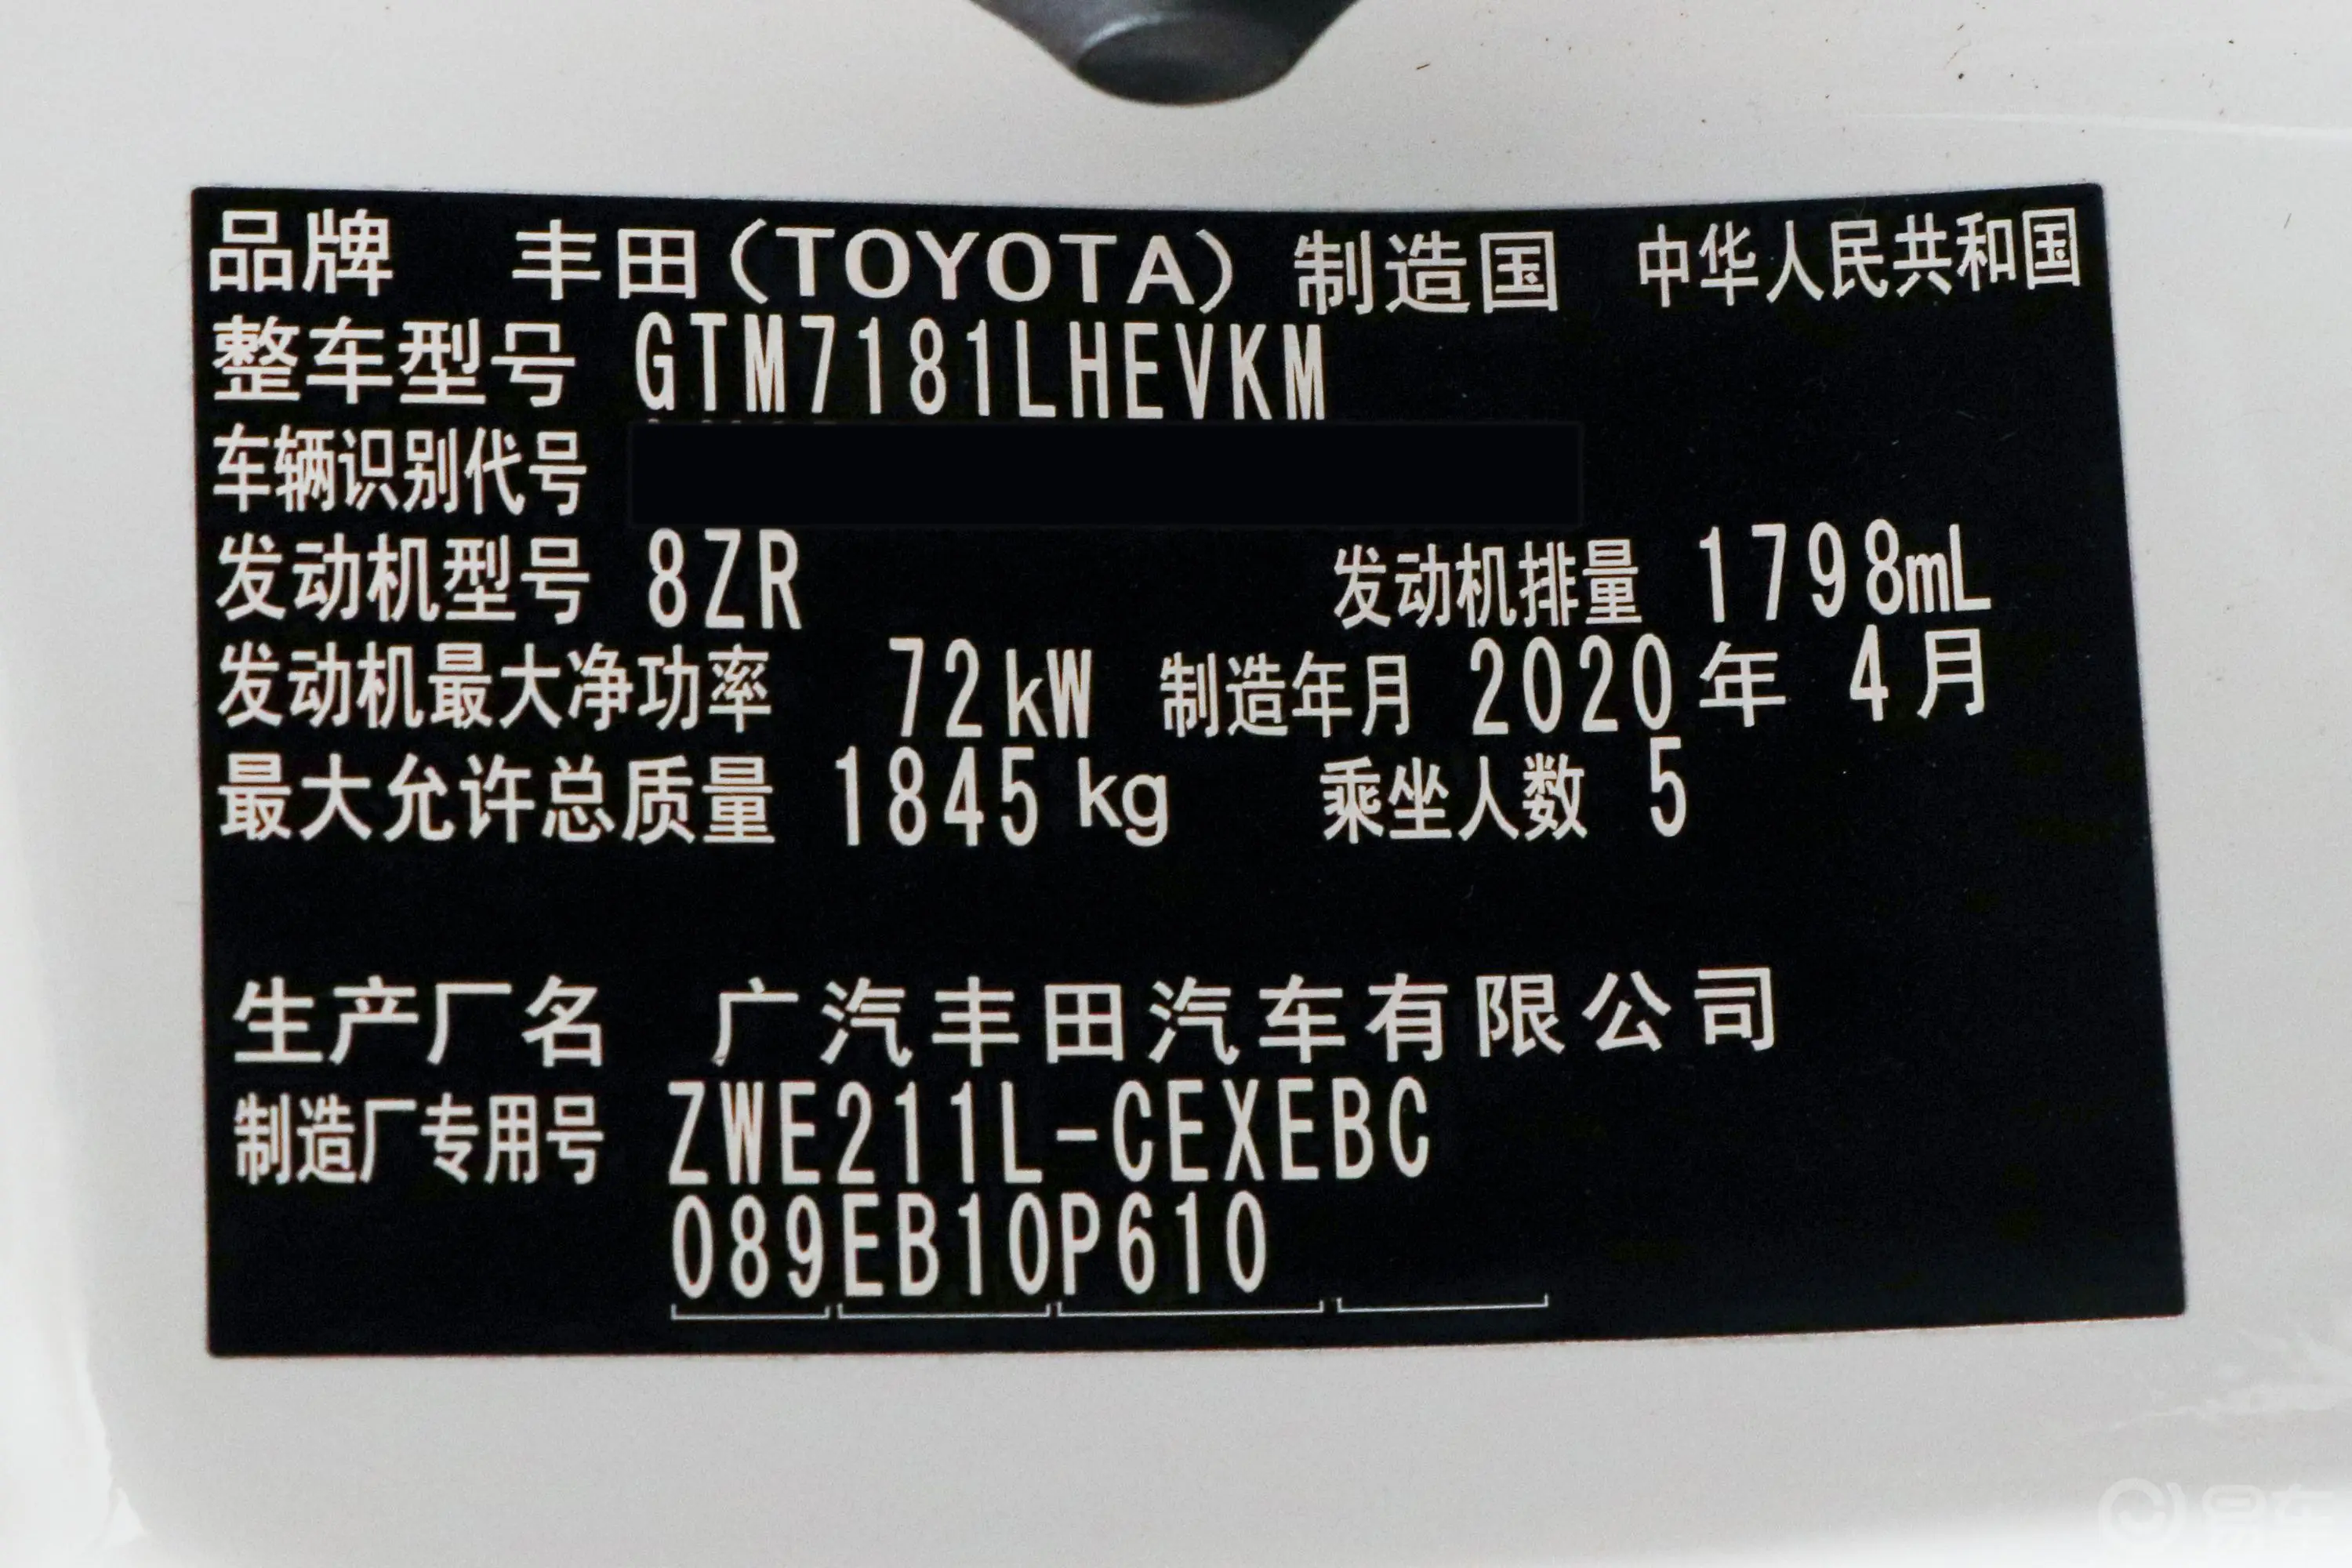 雷凌双擎 1.8L E-CVT 运动版车辆信息铭牌